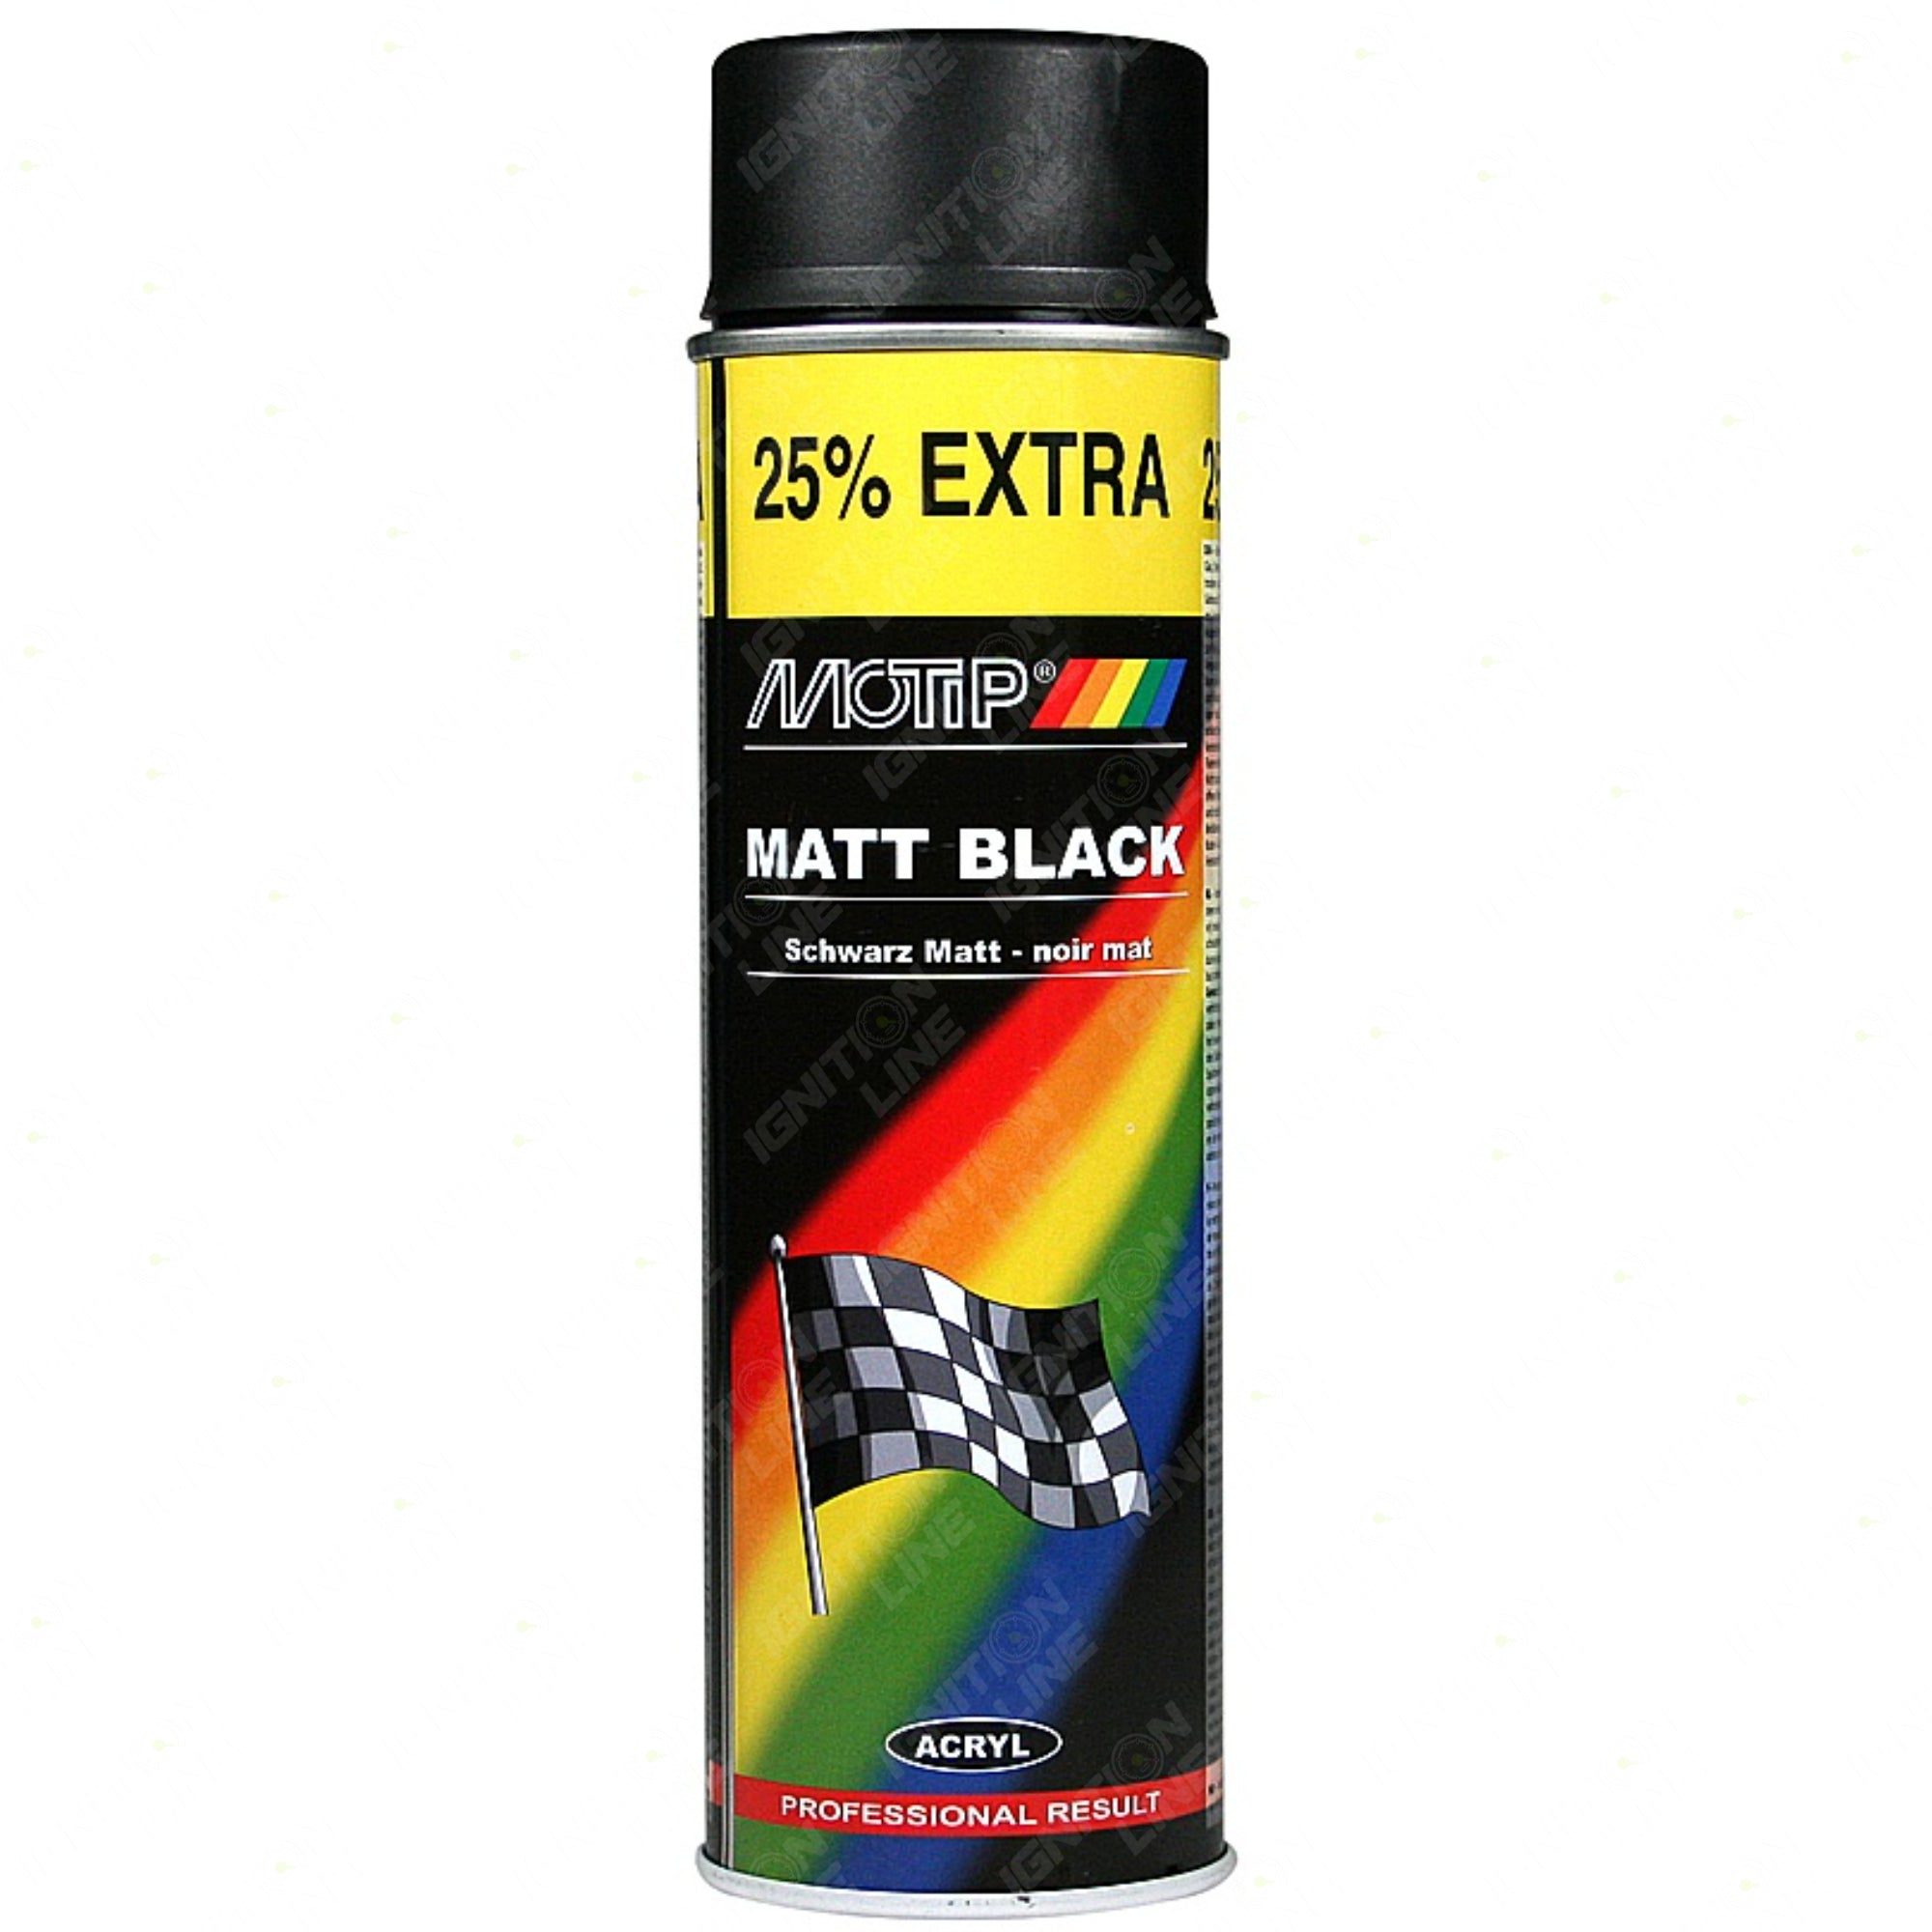 Motip Matt Black Spray 500ml